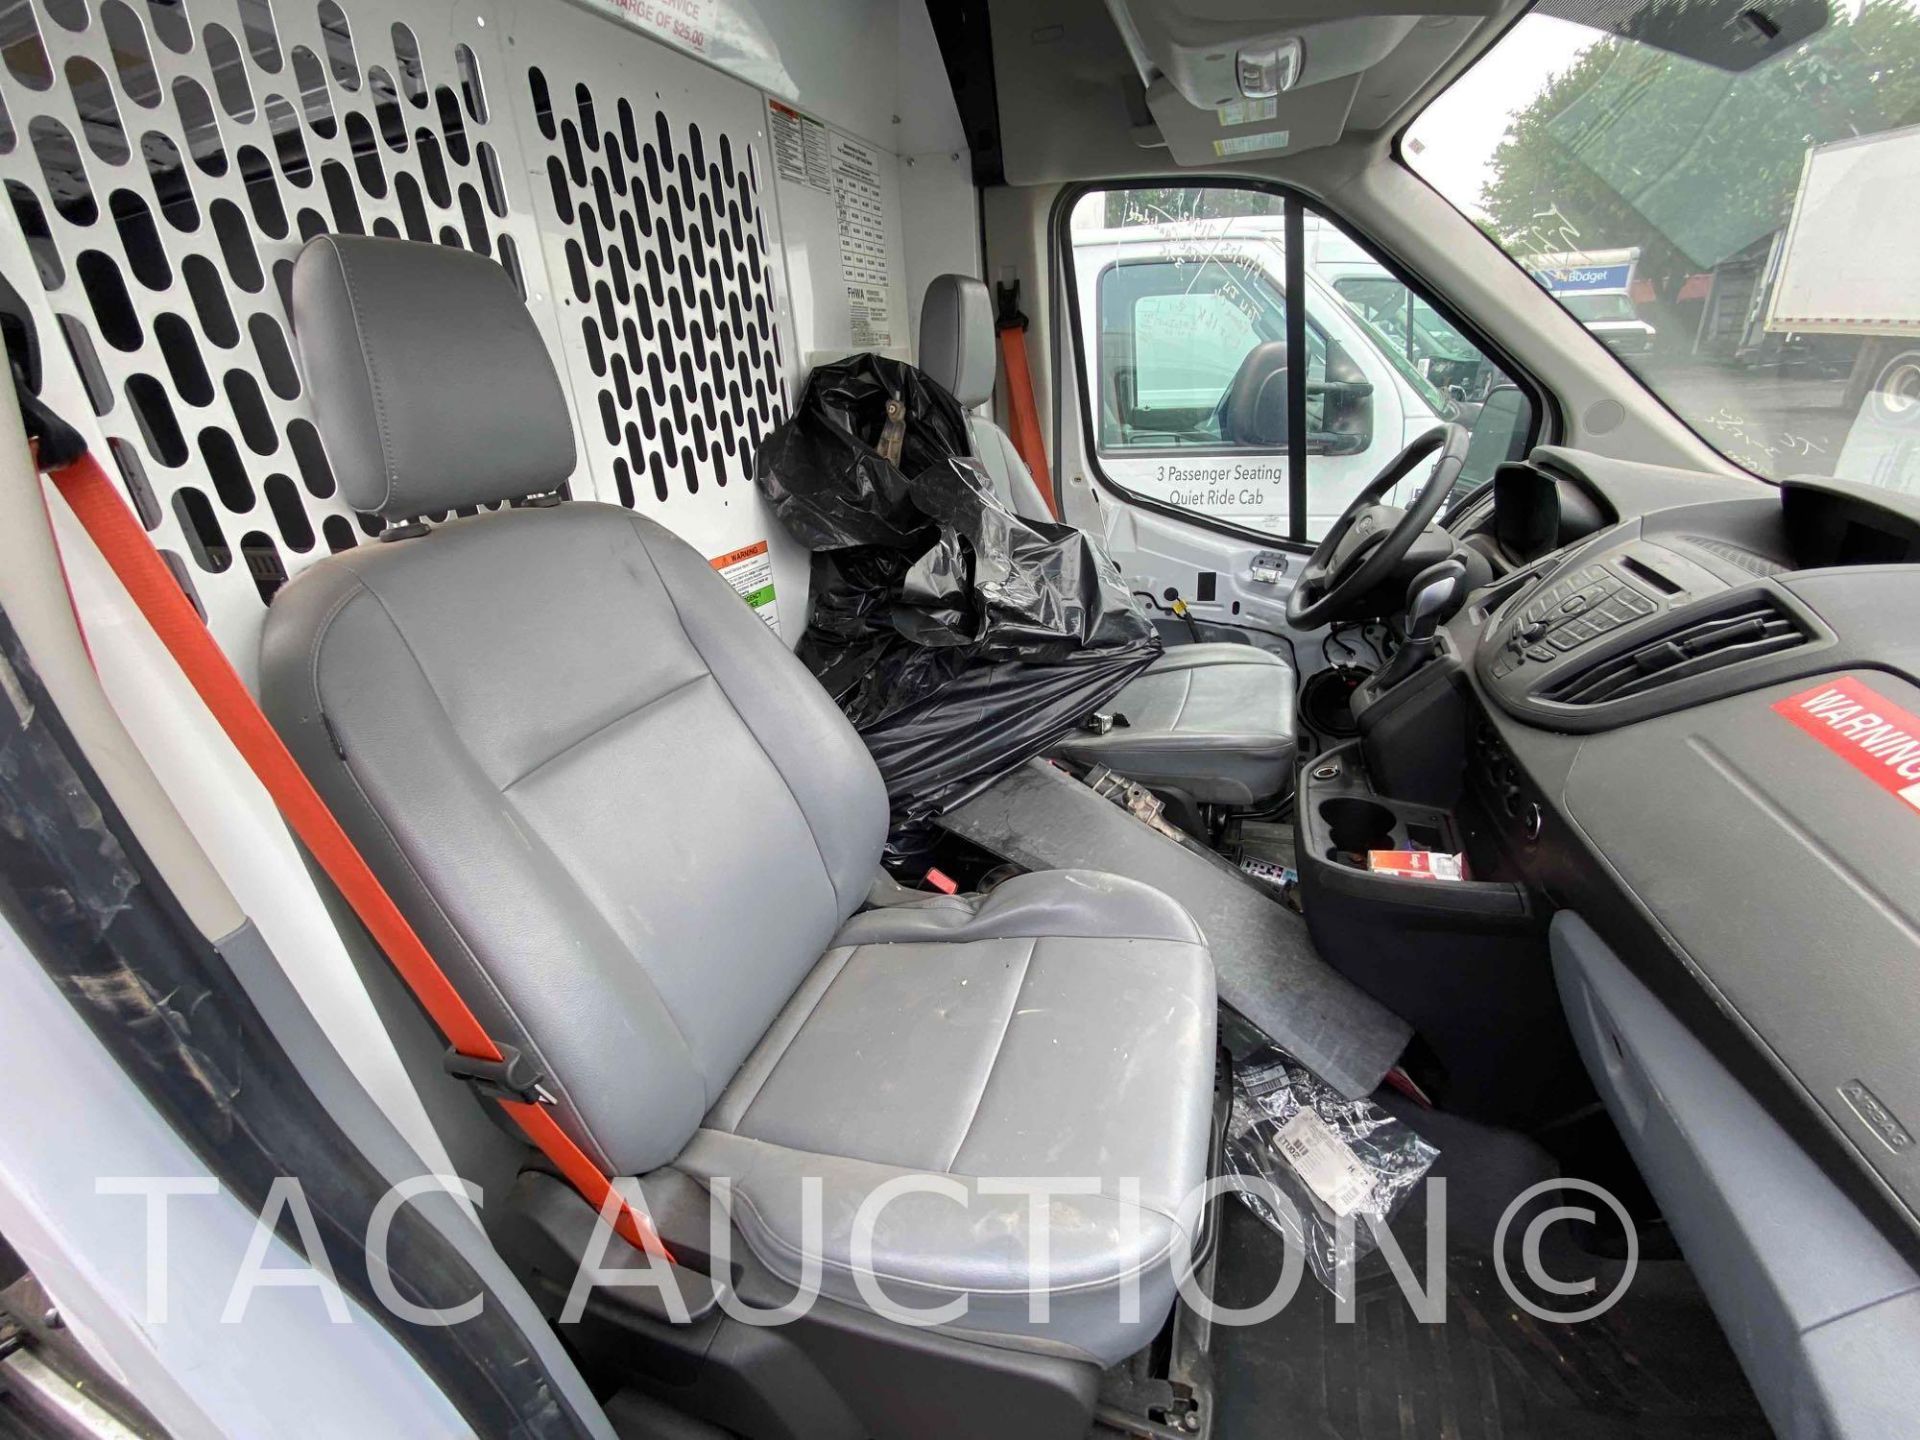 2019 Ford Transit 150 Cargo Van - Image 14 of 42